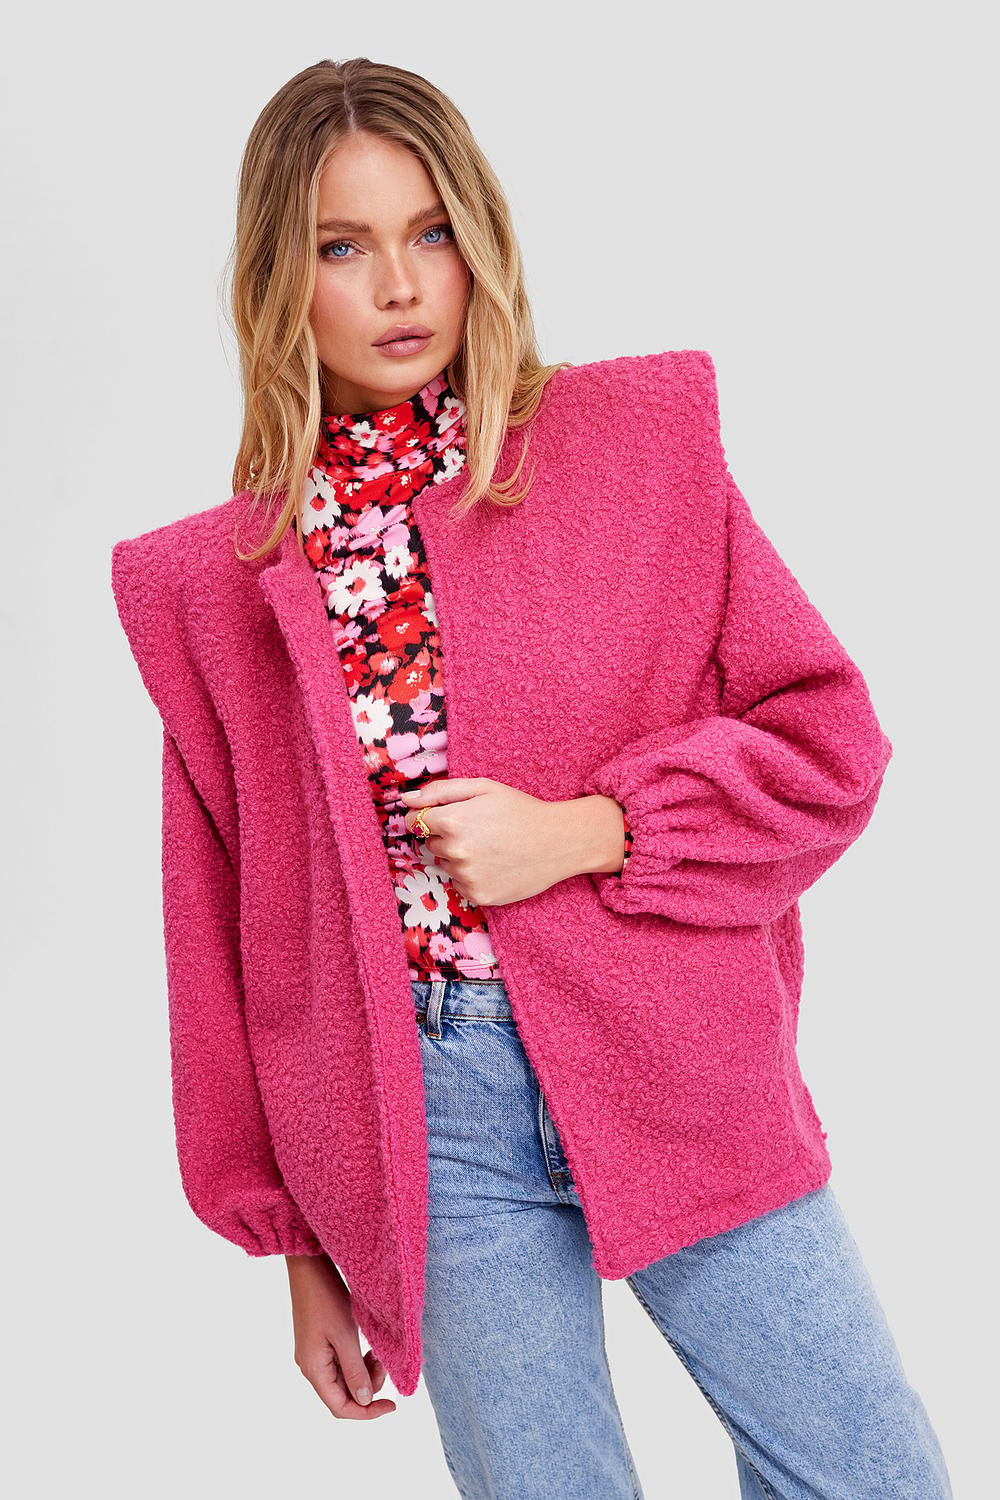 Roze jacket